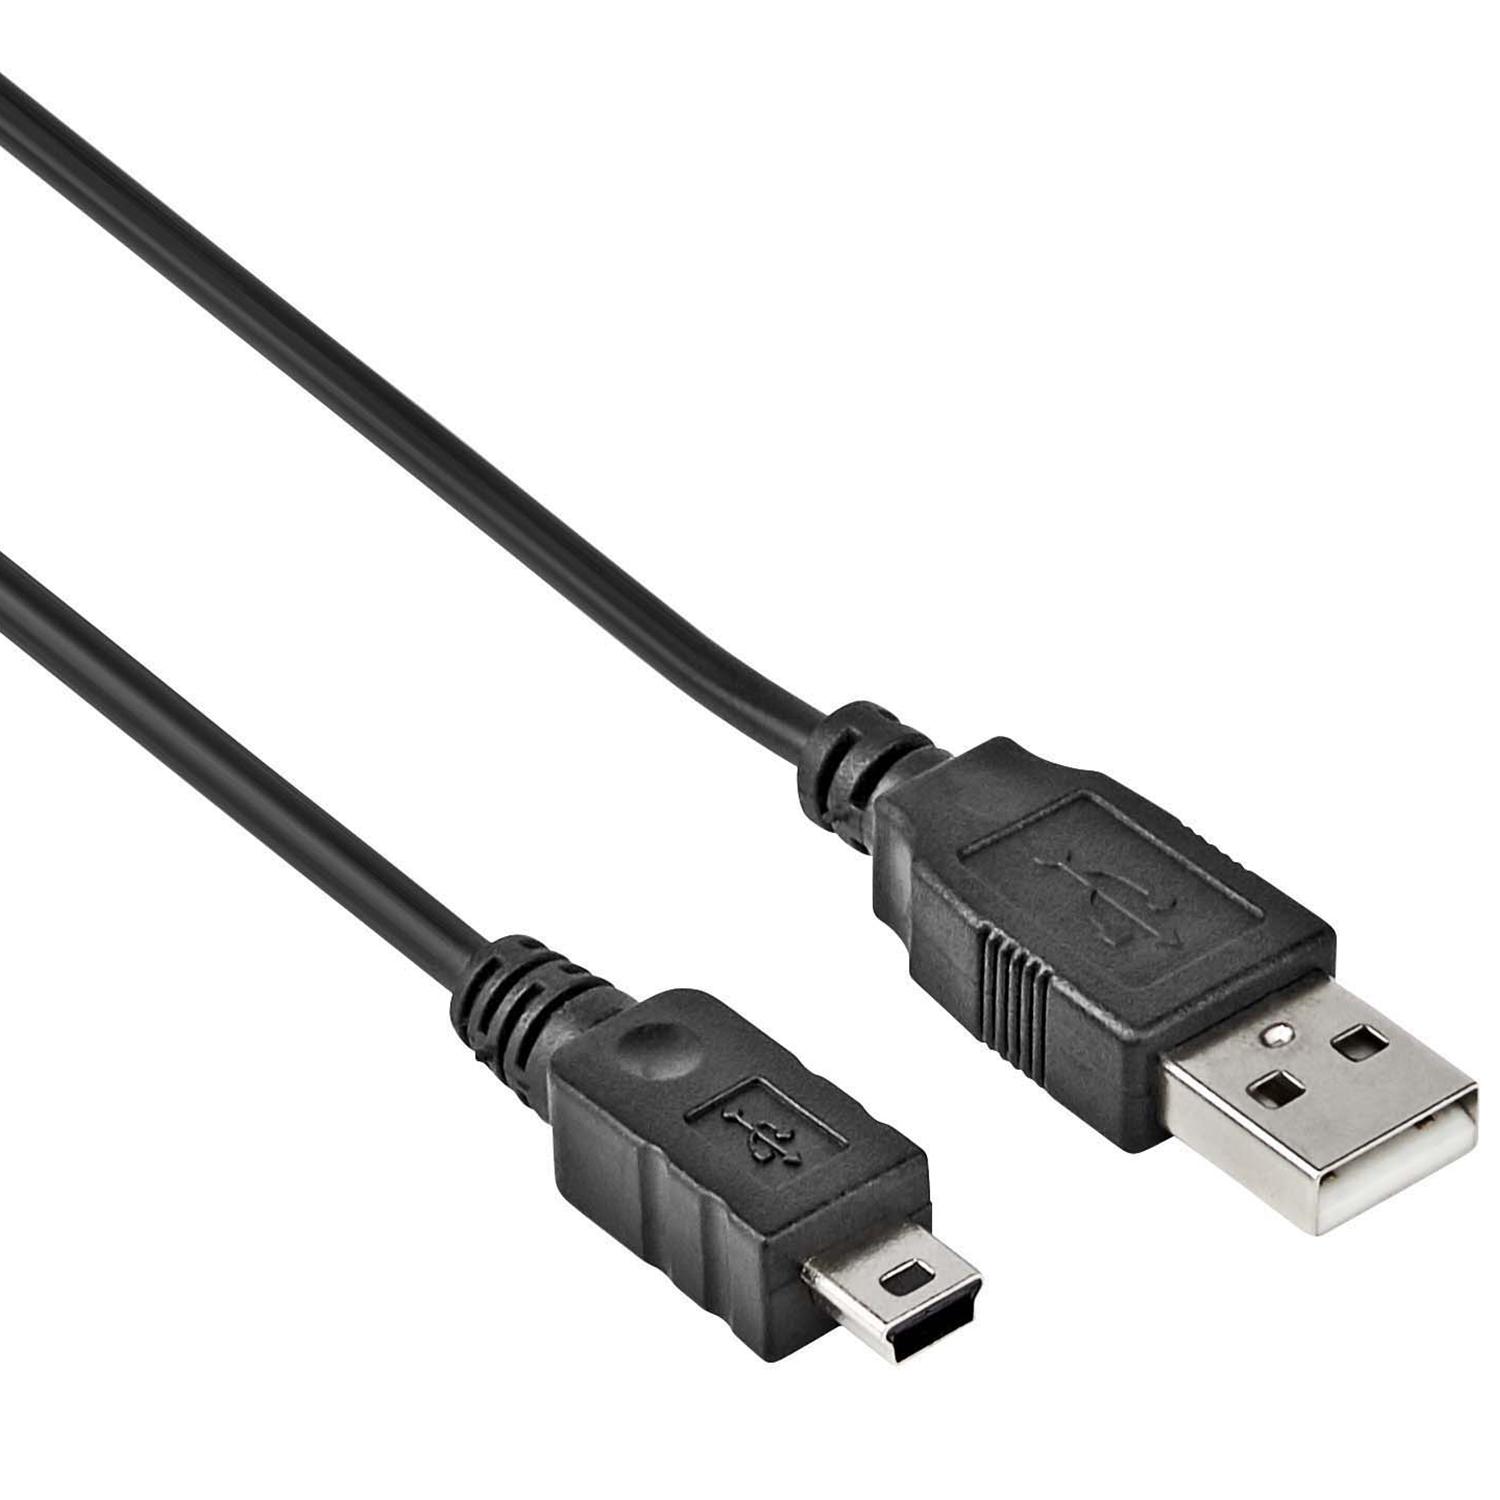 Aan boord Verbinding licht Mini USB Kabel - Versie: 2.0 - HighSpeed, Aansluiting 1: USB A male,  Aansluiting 2: Mini USB male, Lengte: 1 meter.